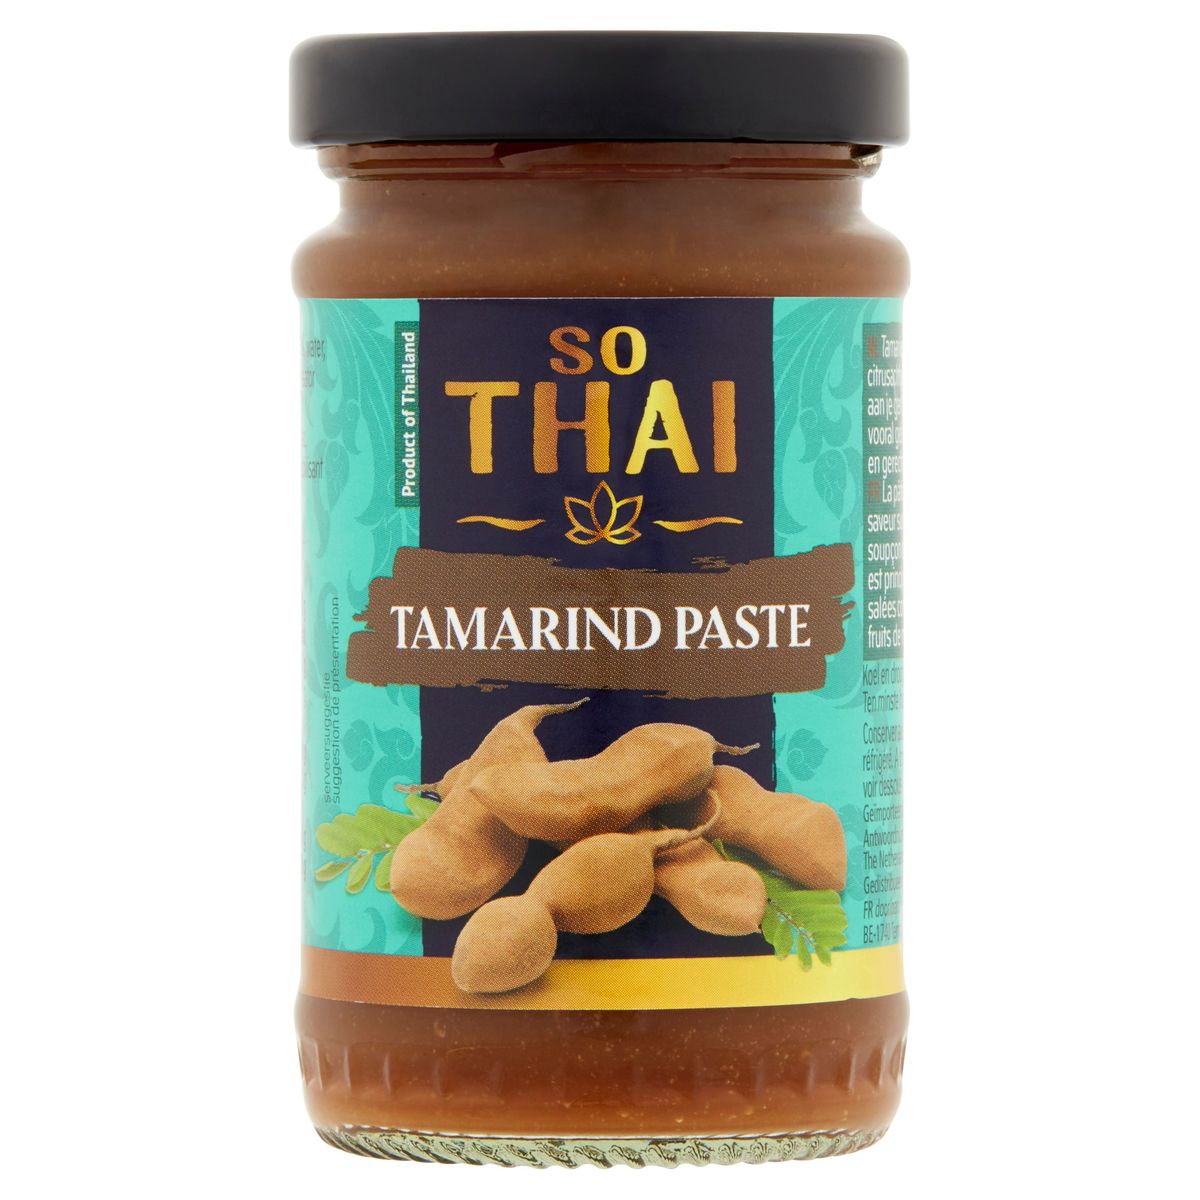 Pâte de Tamarin - Thai Héritage